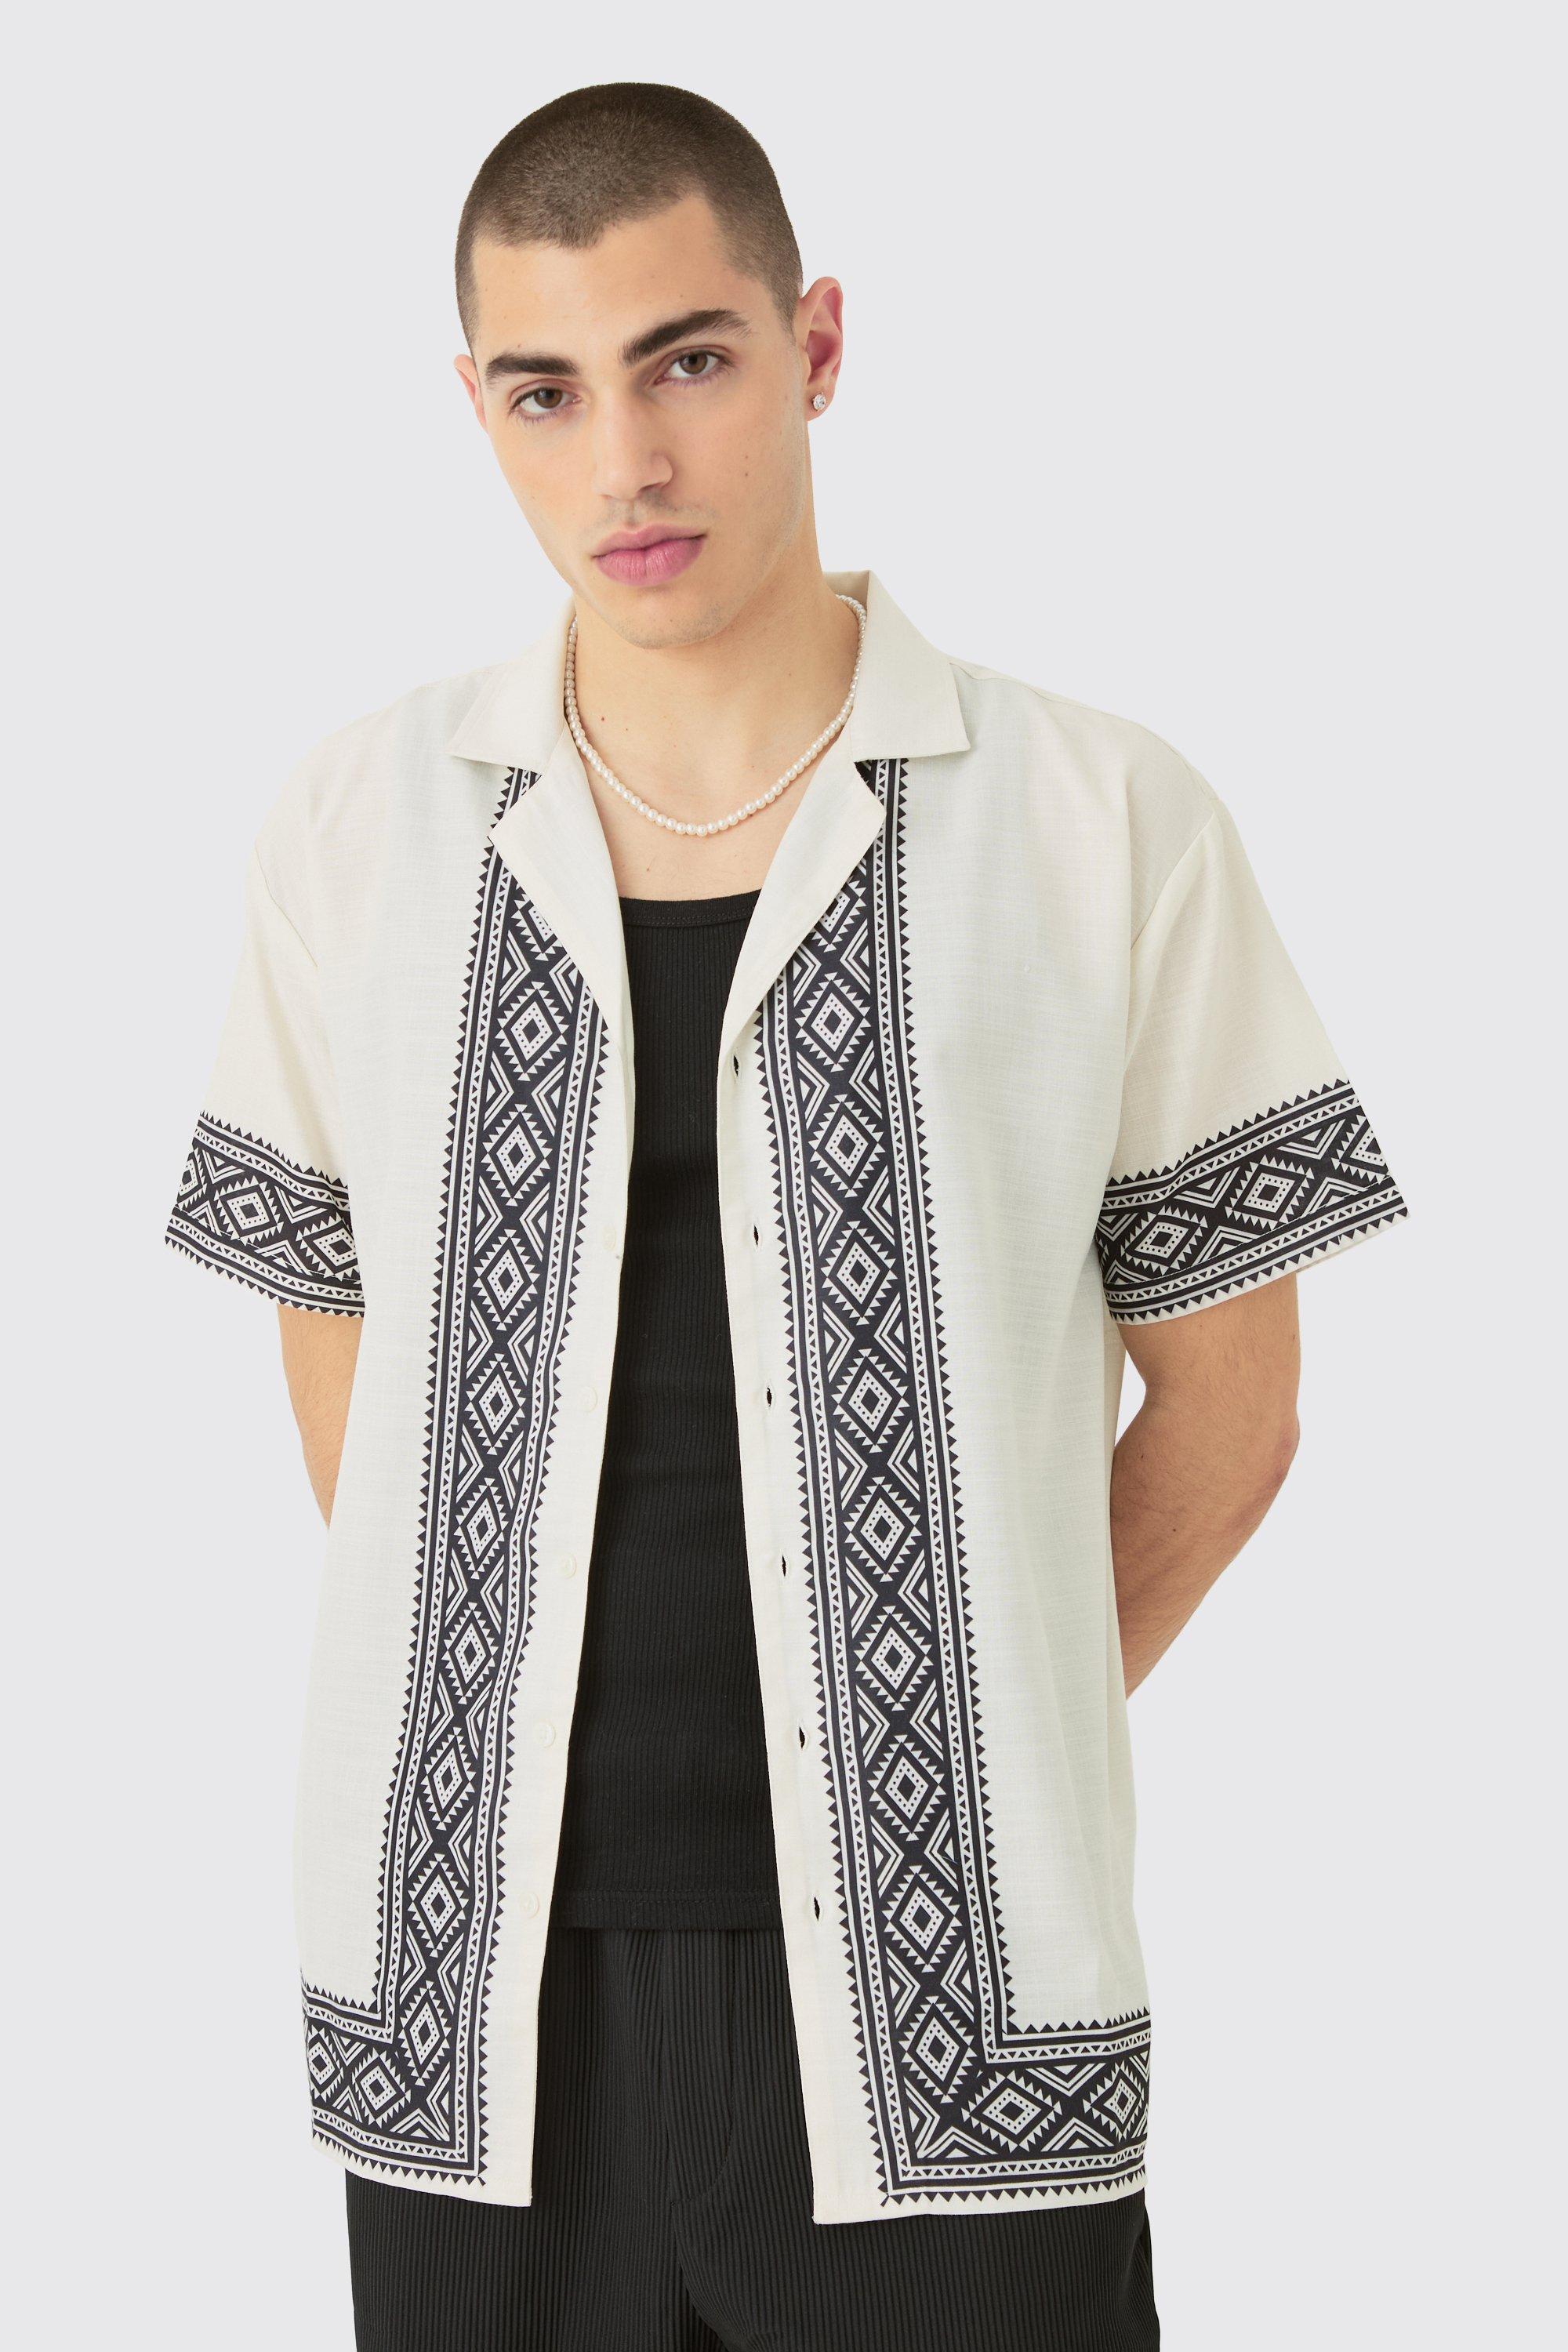 Image of Oversized Linen Look Aztec Border Shirt, Cream